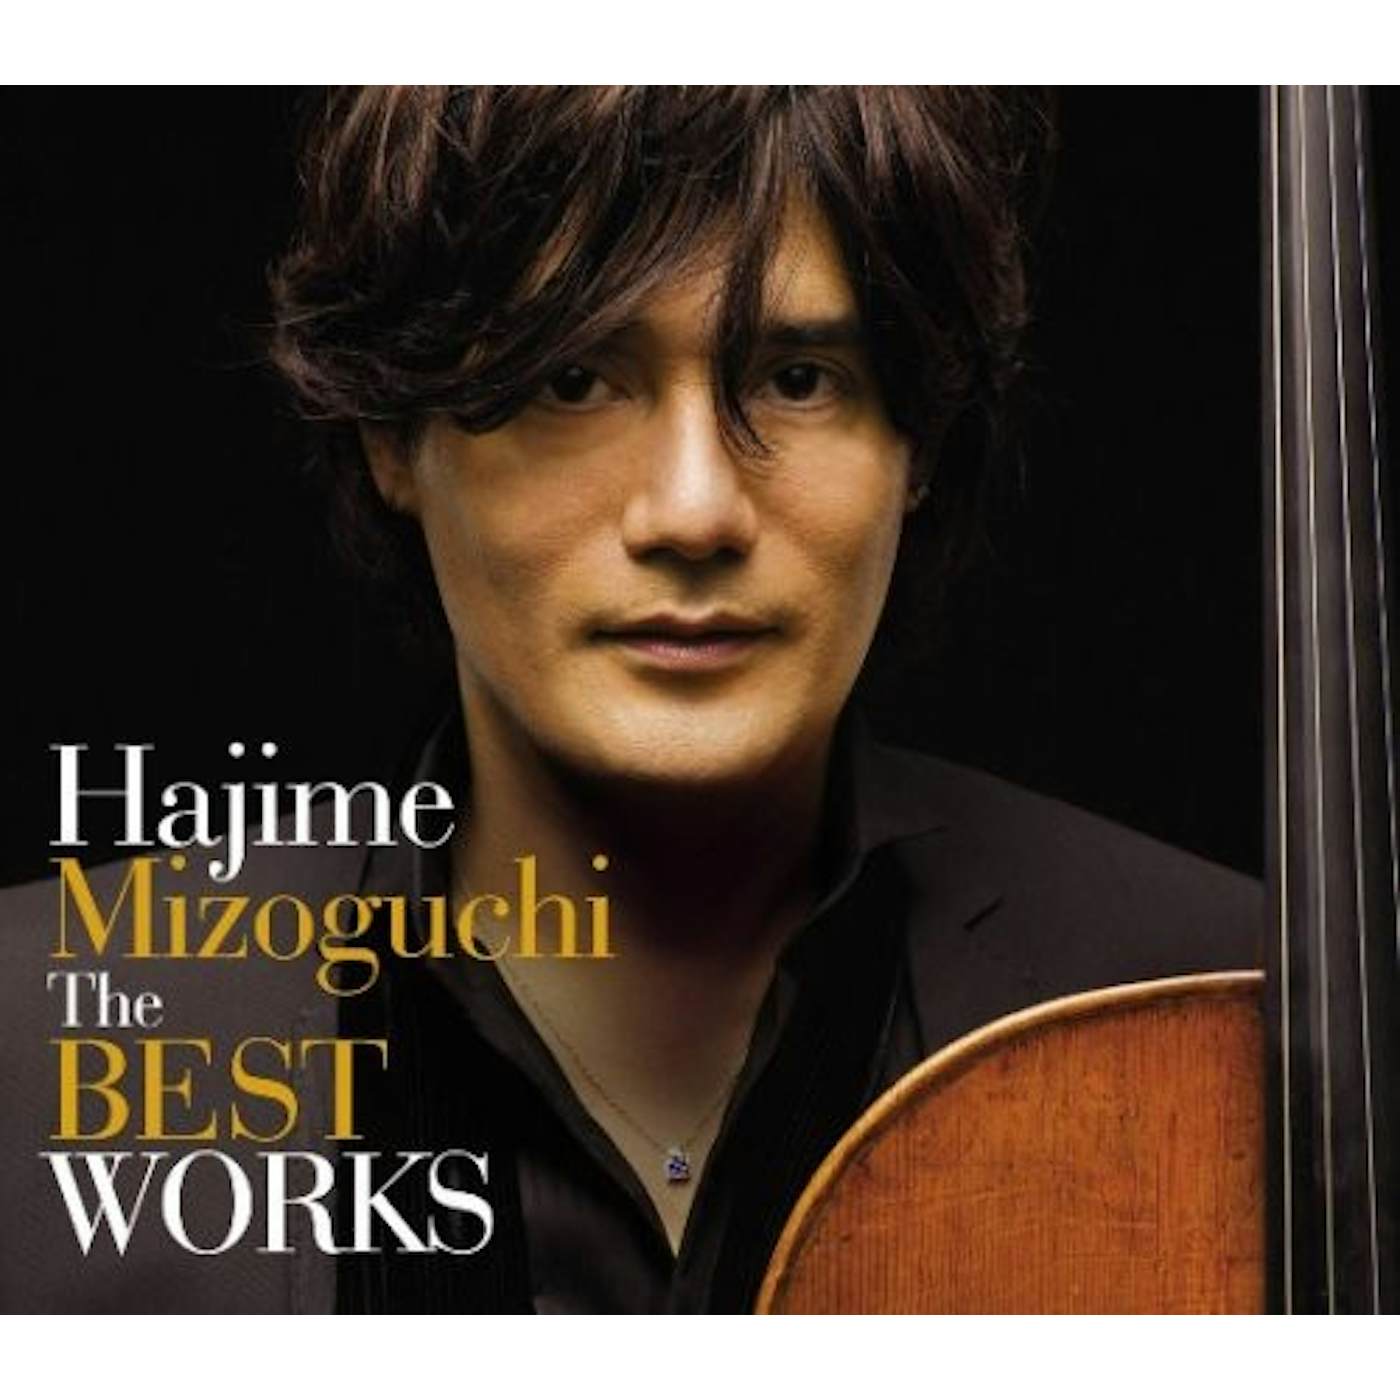 Hajime Mizoguchi BEST WORKS CD